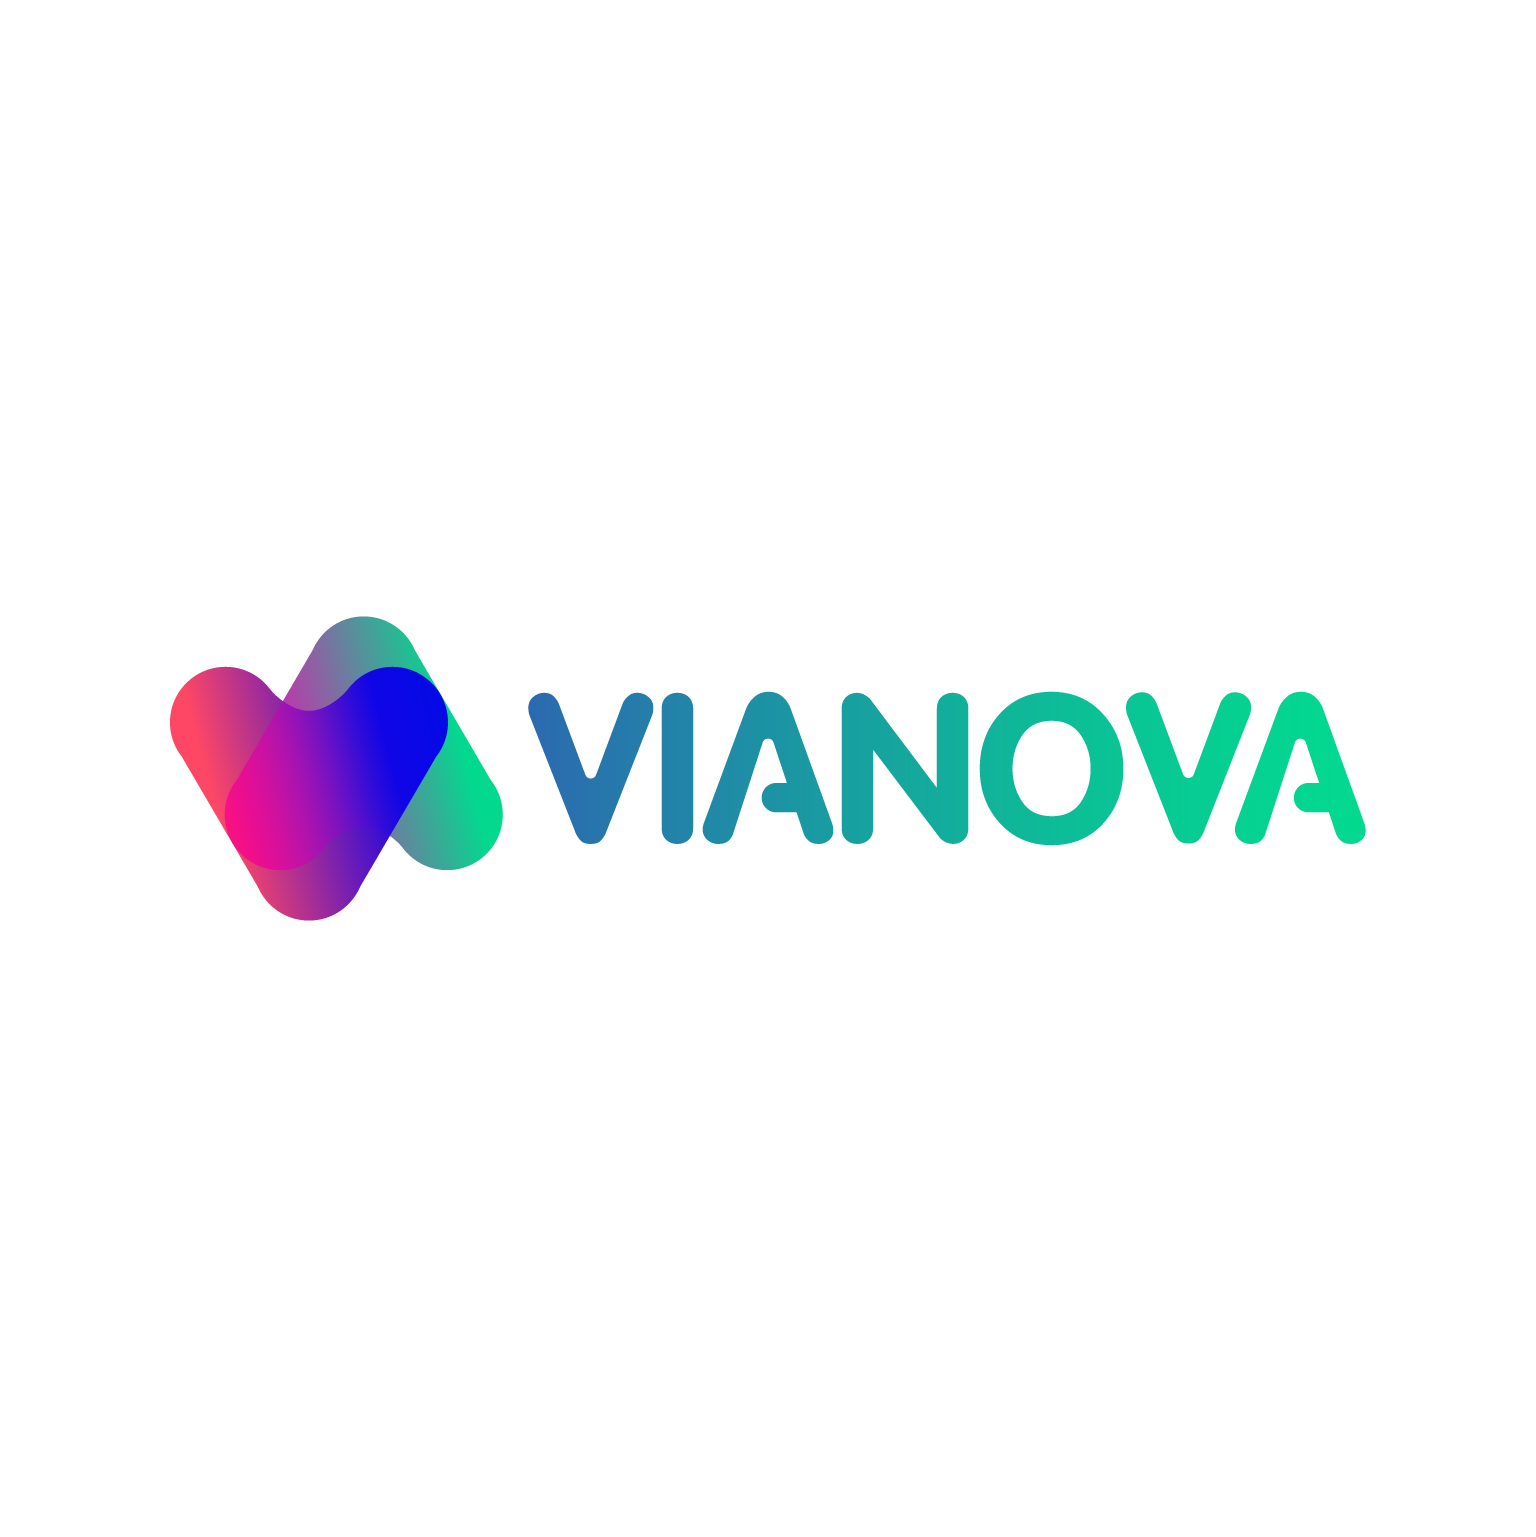 Vianova